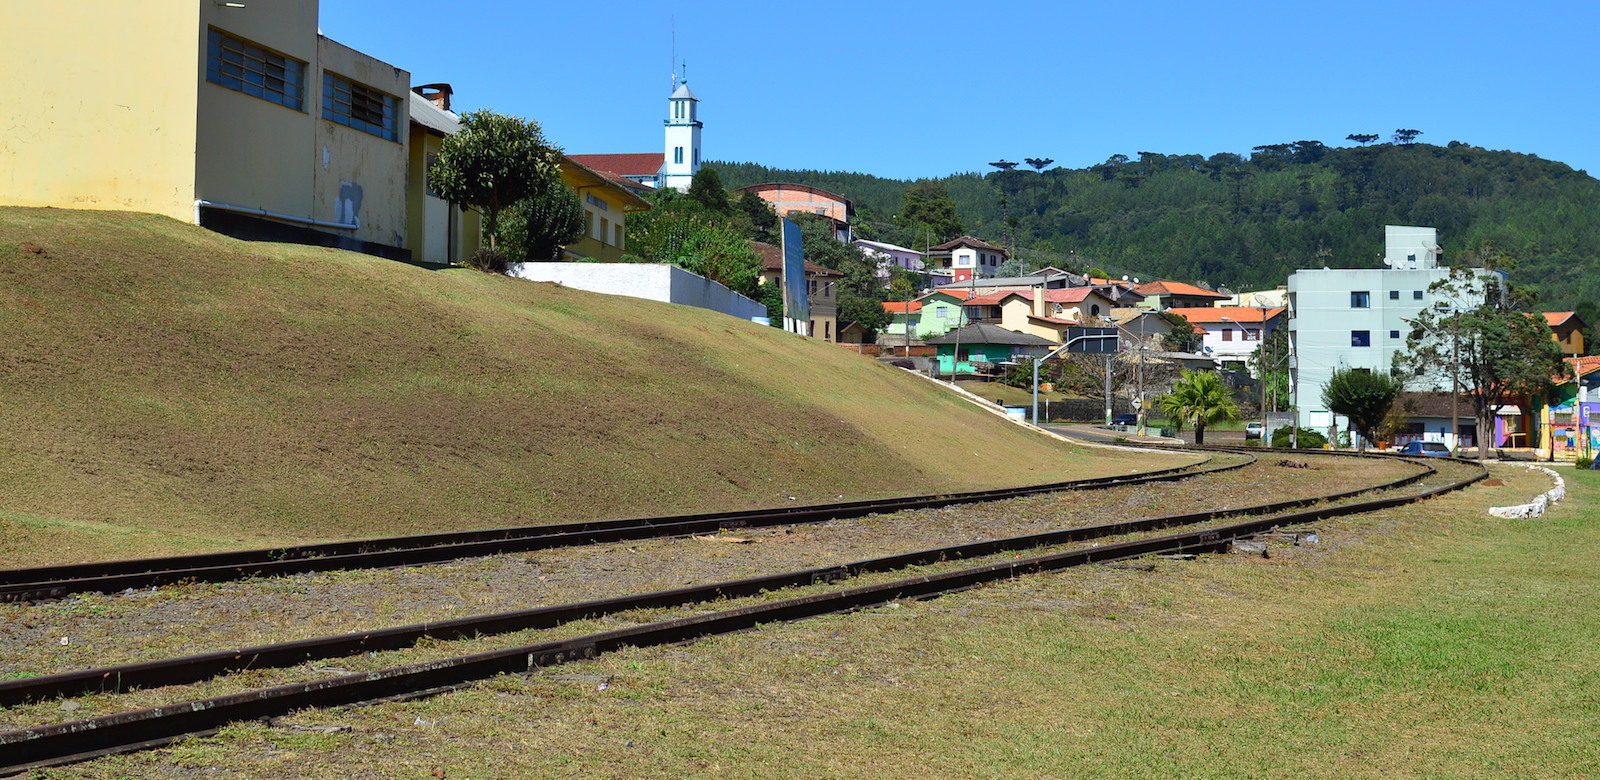 Figura 2: Pátio da estação ferroviária preservada em Rio das Antas/SC